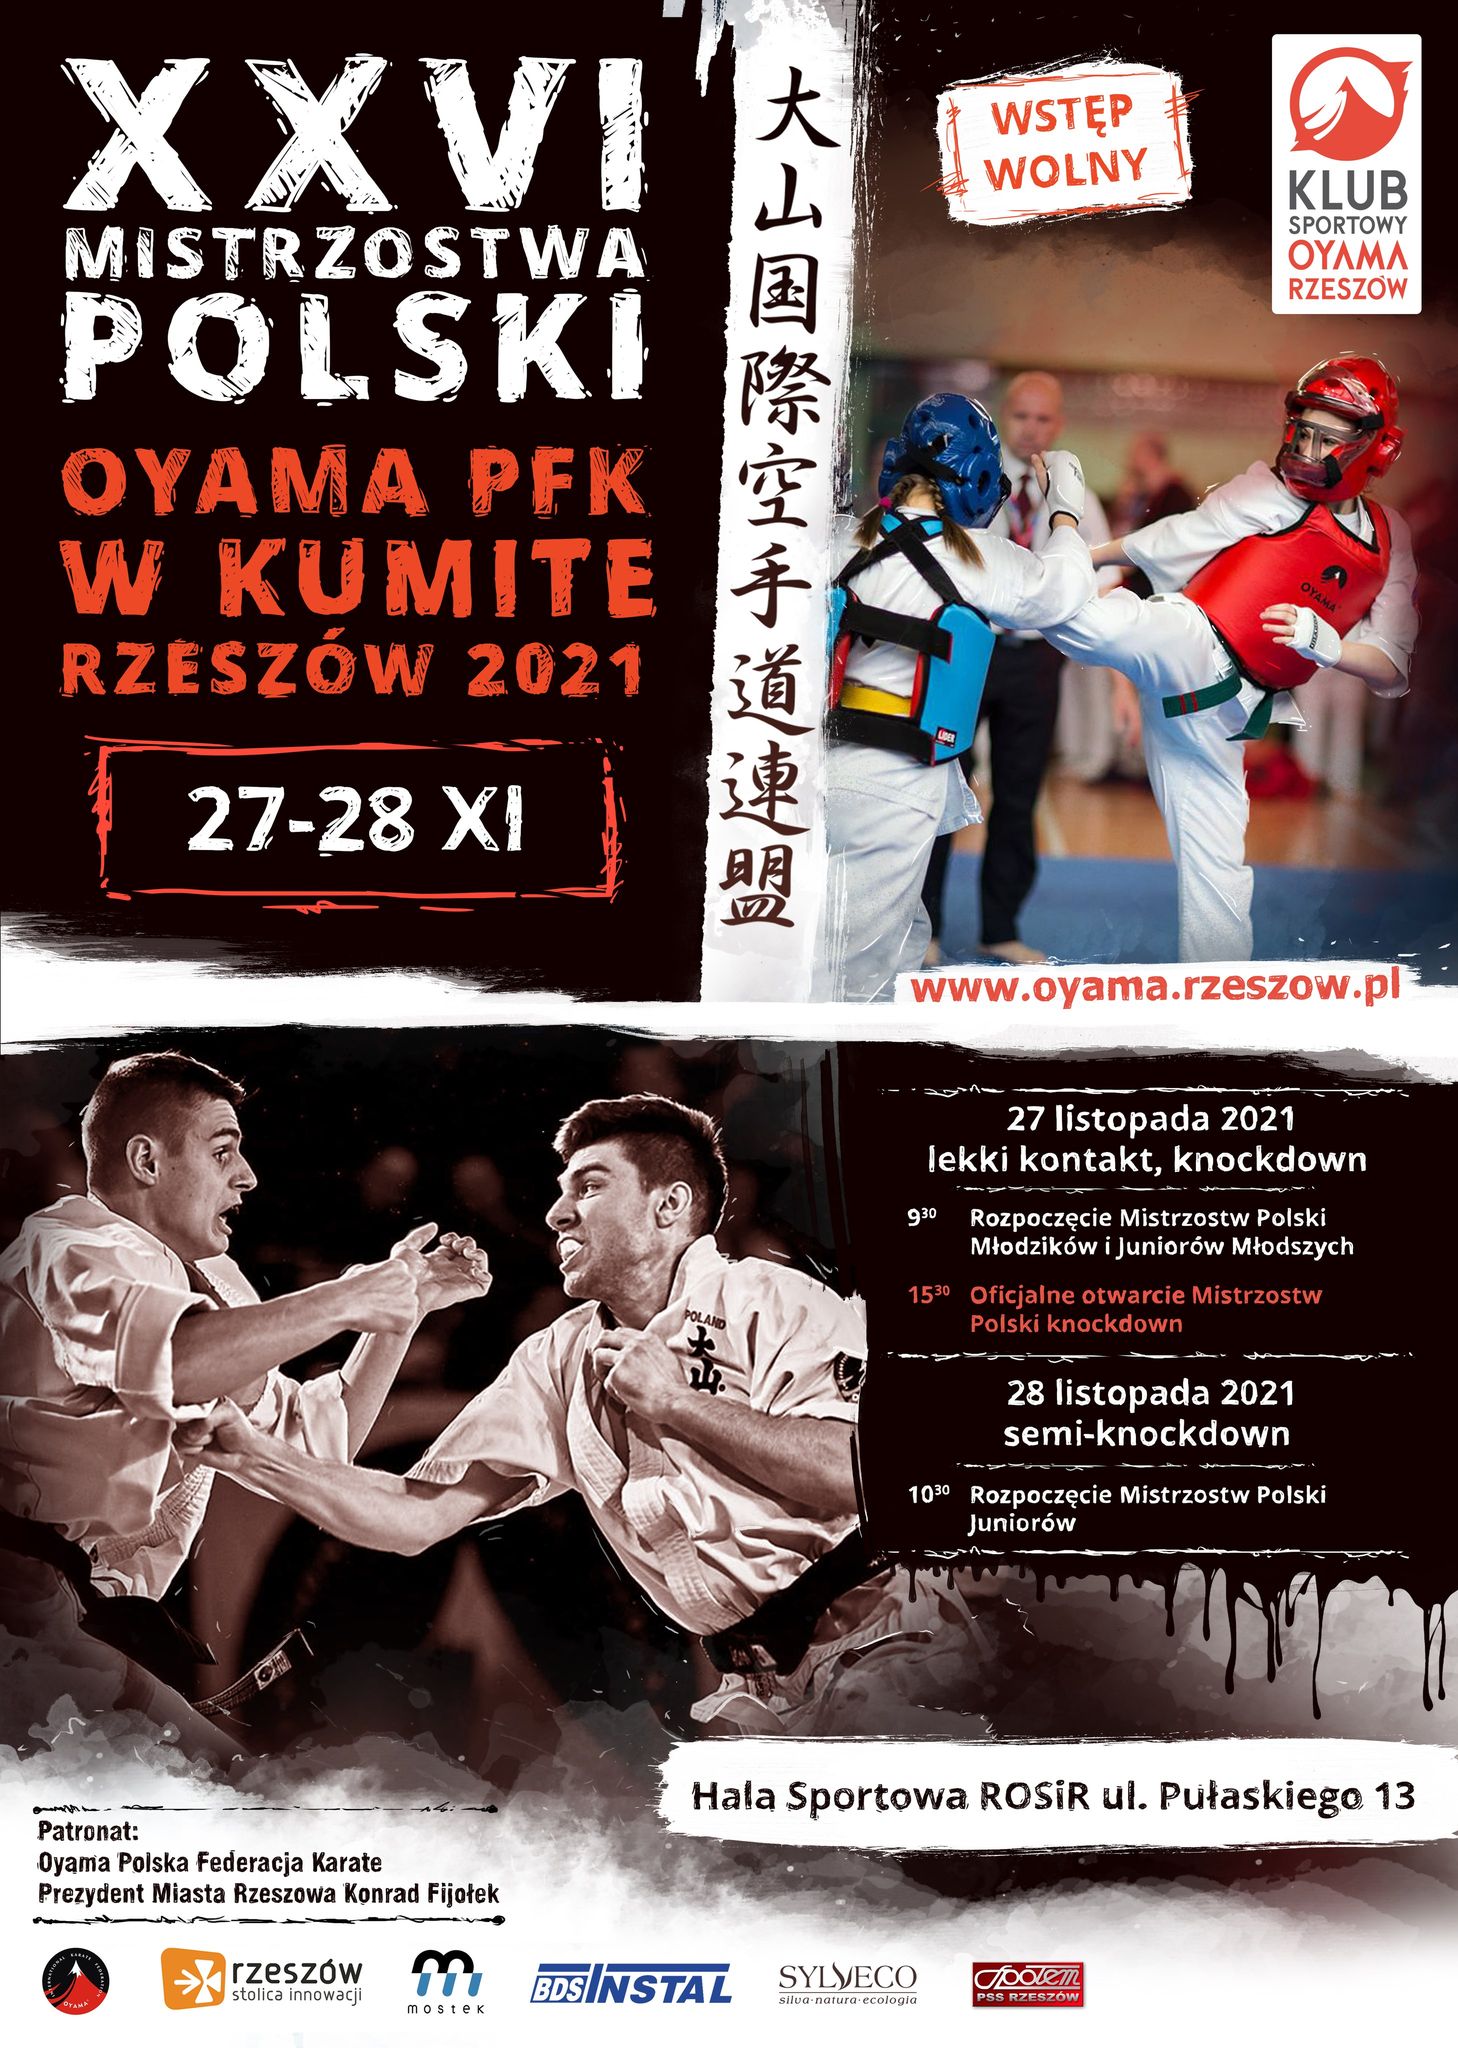 MP Karate Oyama Rzeszów 2021 - SEMI KNOCKDOWN